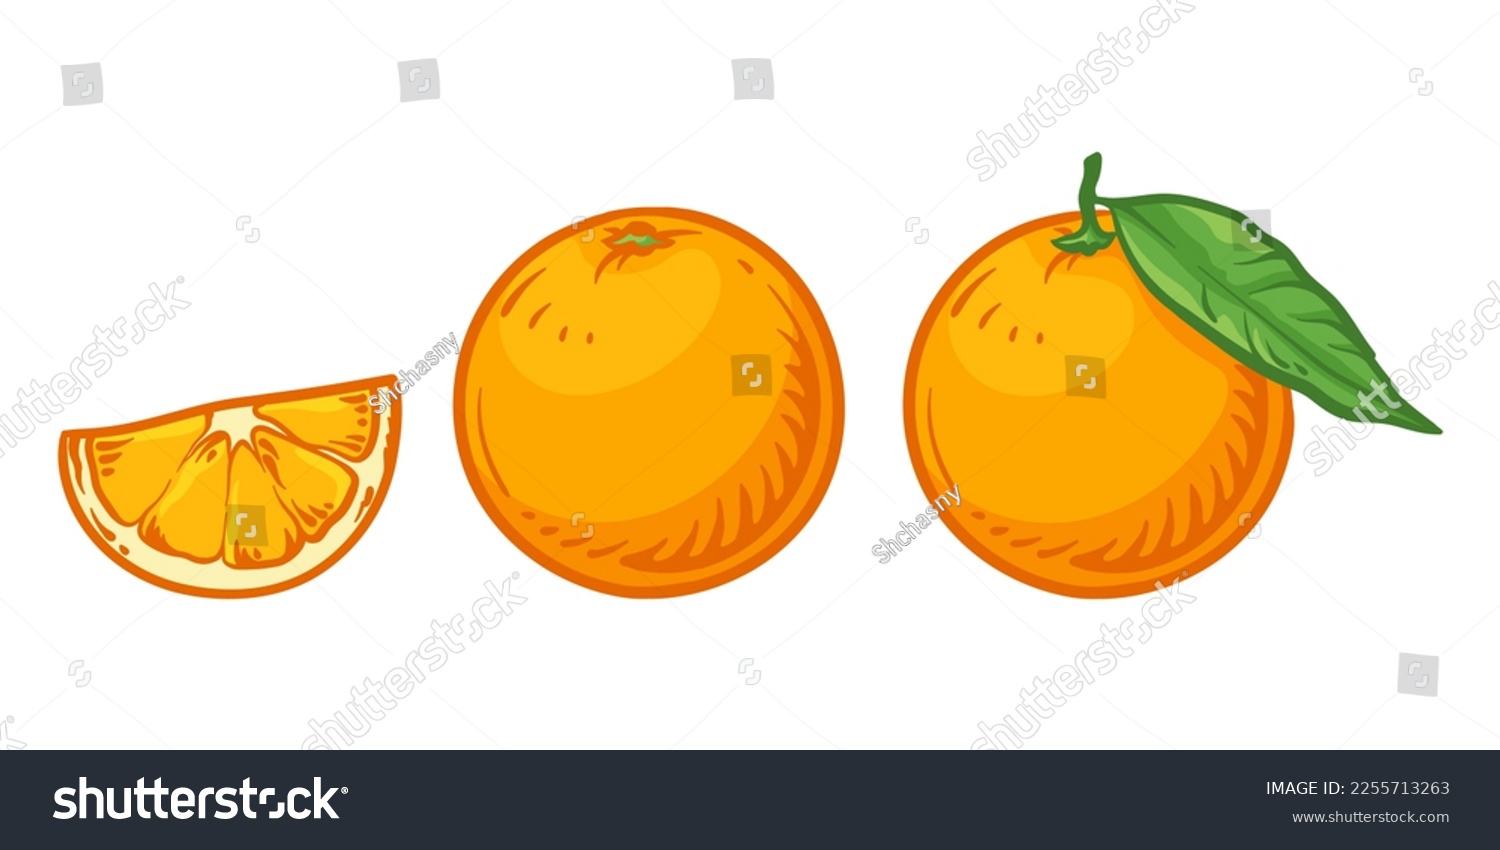 Orange and orange slice. Vector illustration of oranges isolated on white background. #2255713263